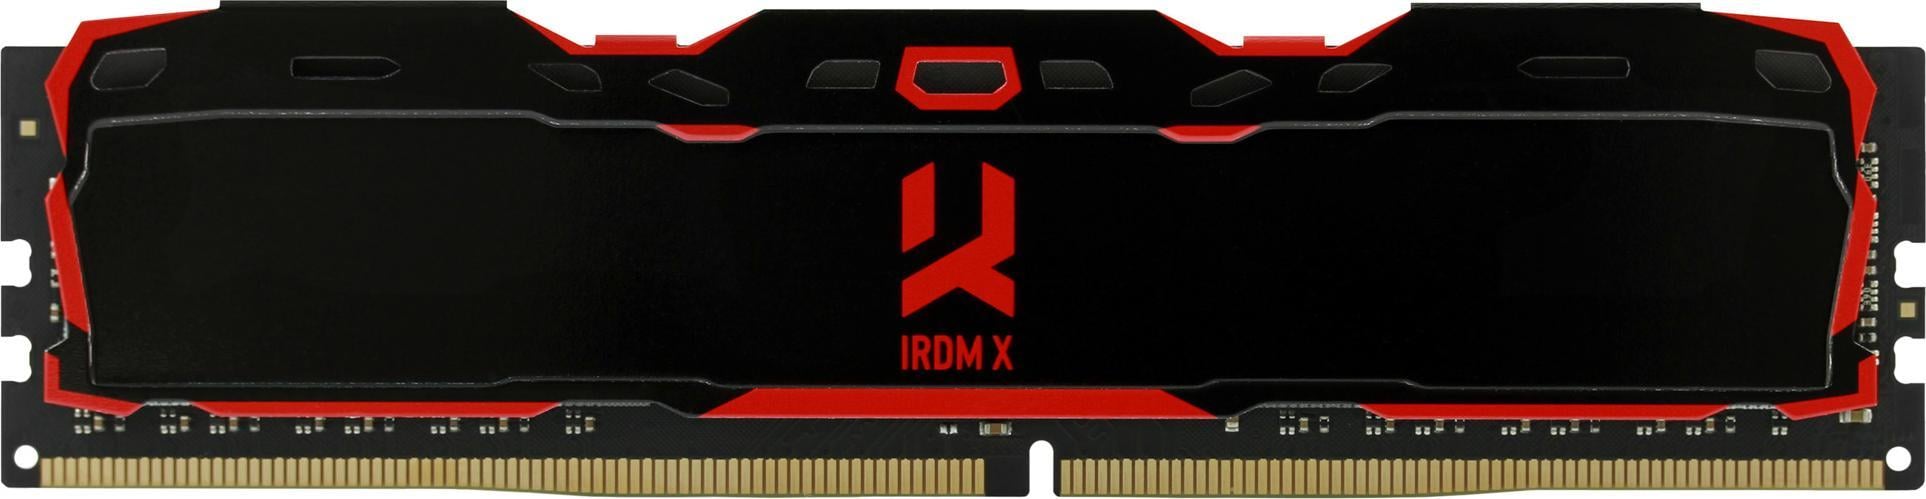 Memorie RAM Goodram IRDM X Black, IR-X3000D464L16S/16GDC, 16GB, DDR4, 3000MHz, CL16, Dual Channel Kit